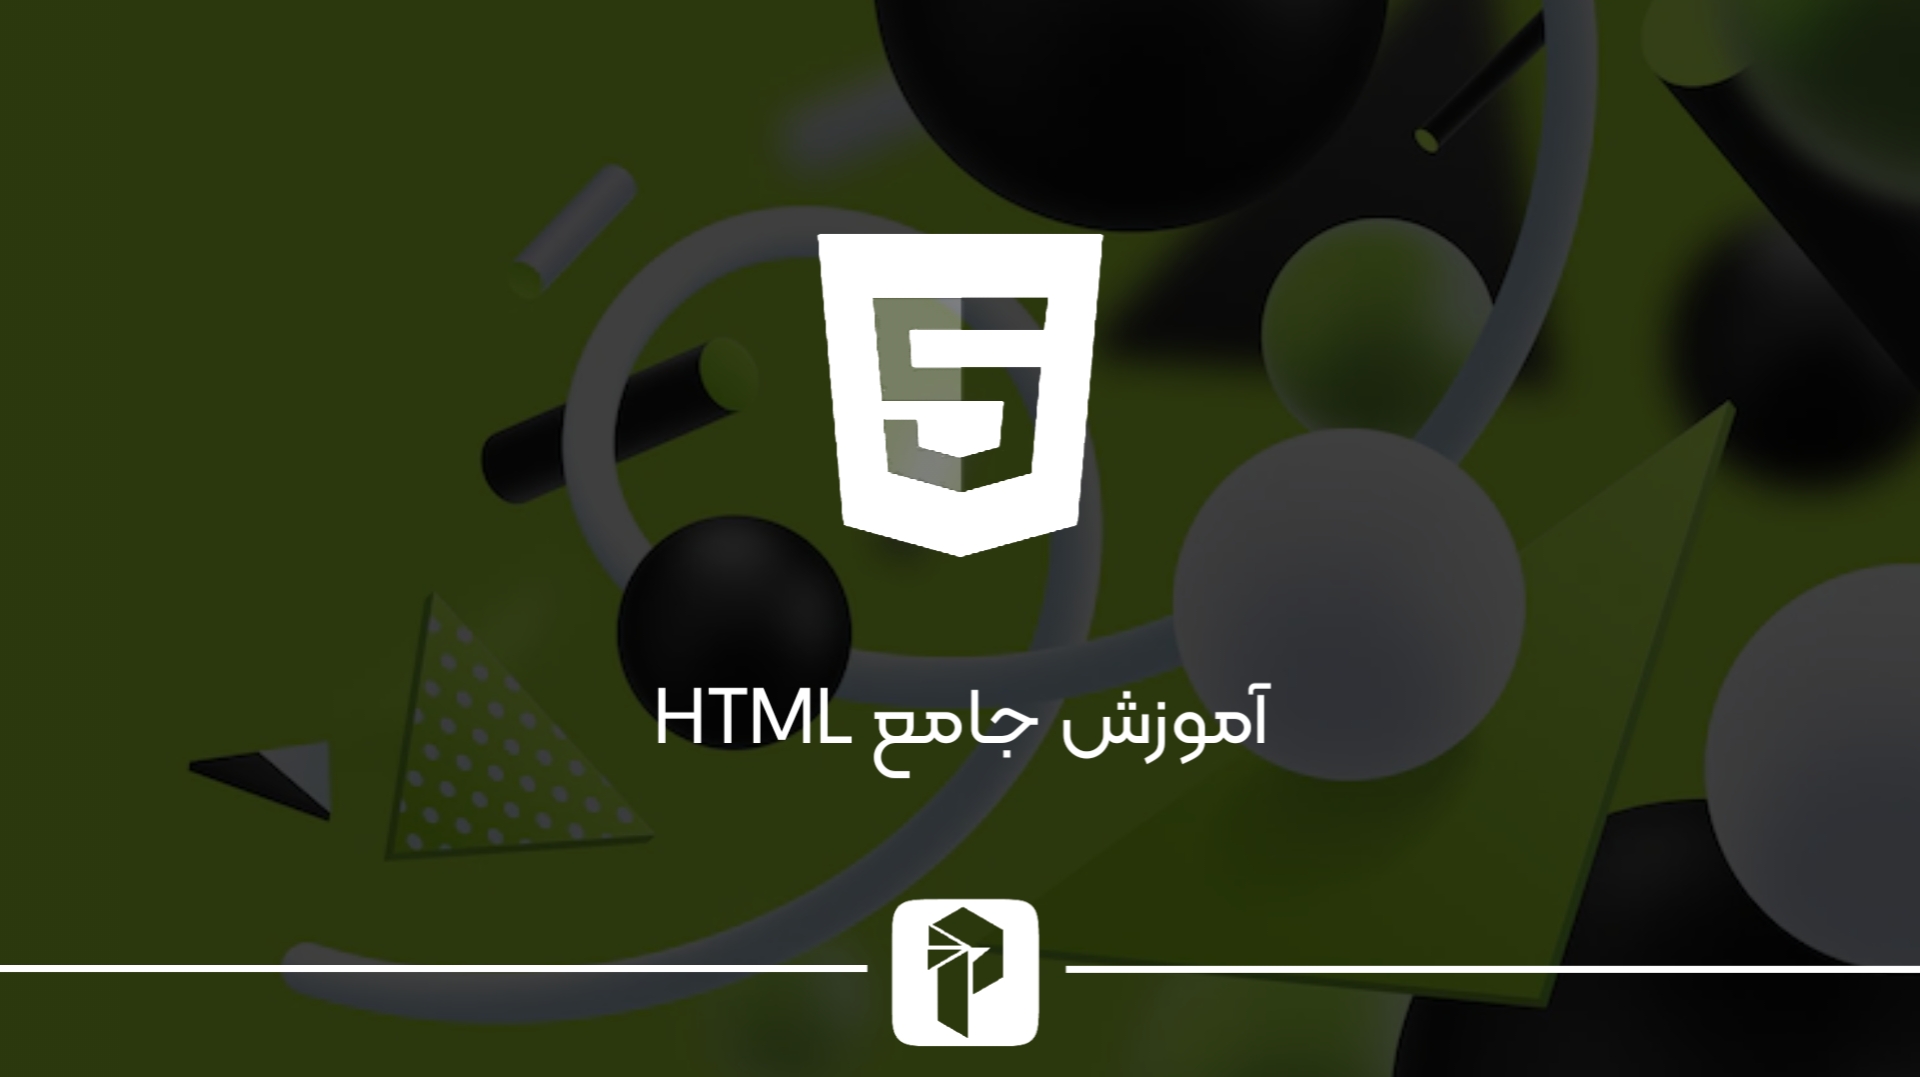 یادگیری کامل HTML